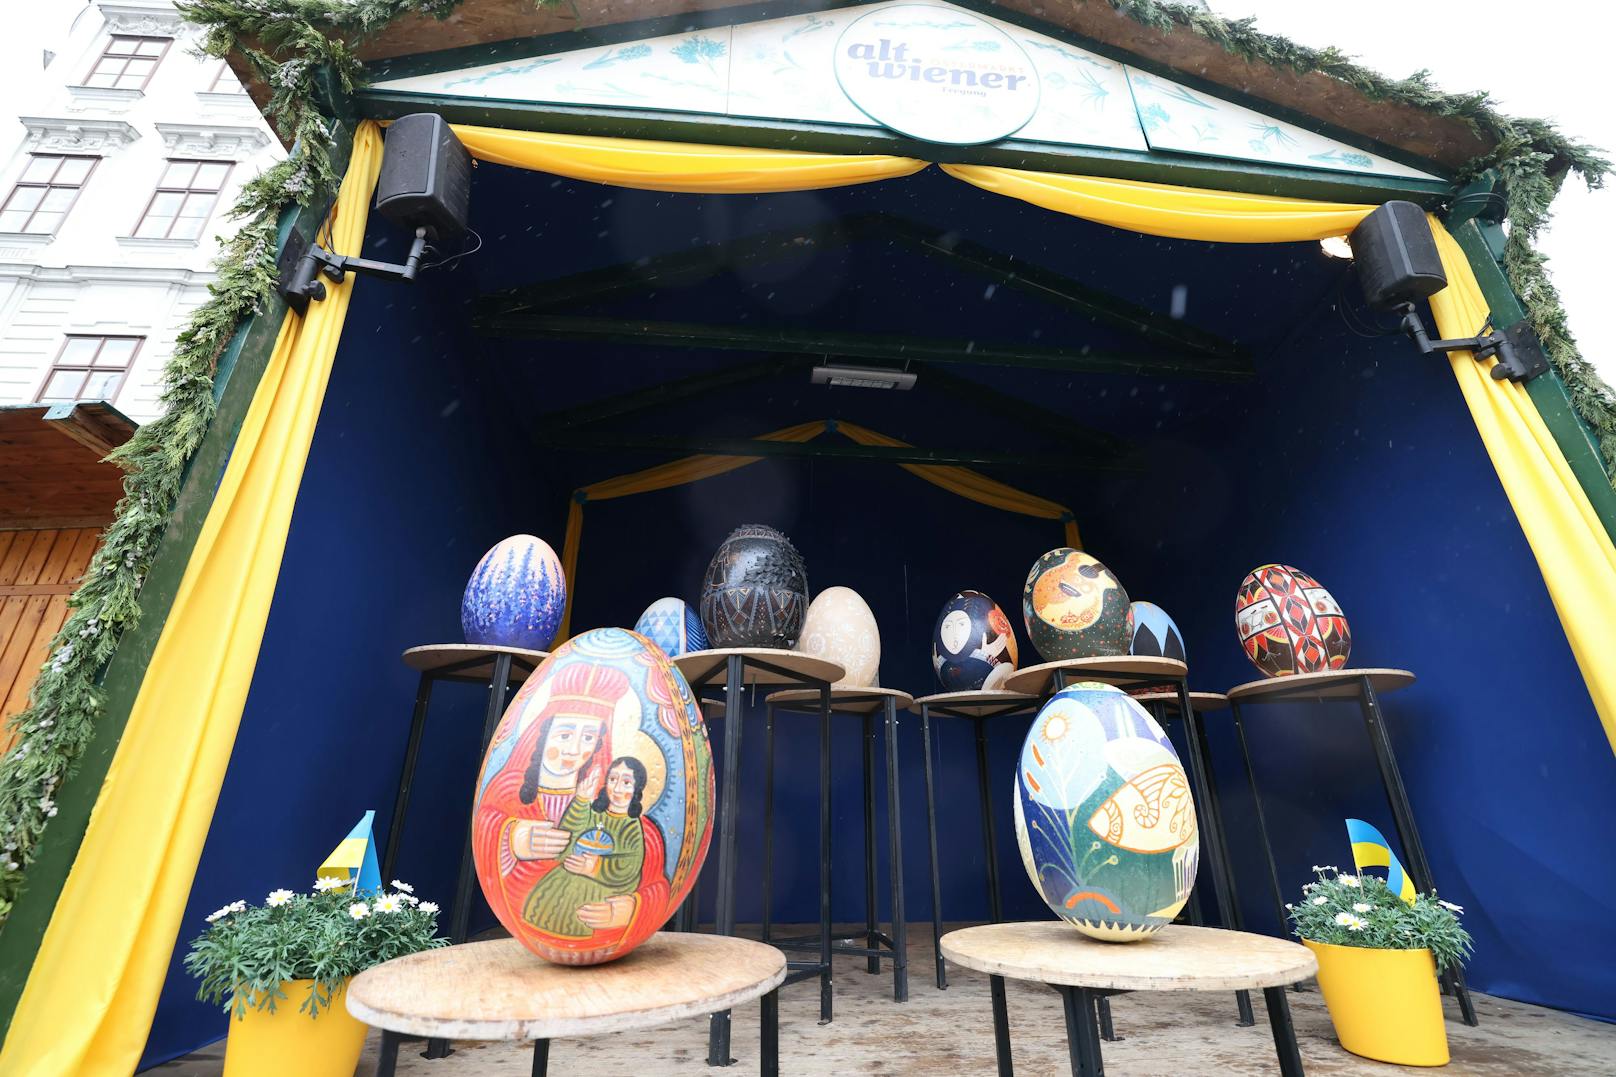 Die Kunst-Eier aus der Ukraine sind ab Freitag in der Wiener City zu sehen.